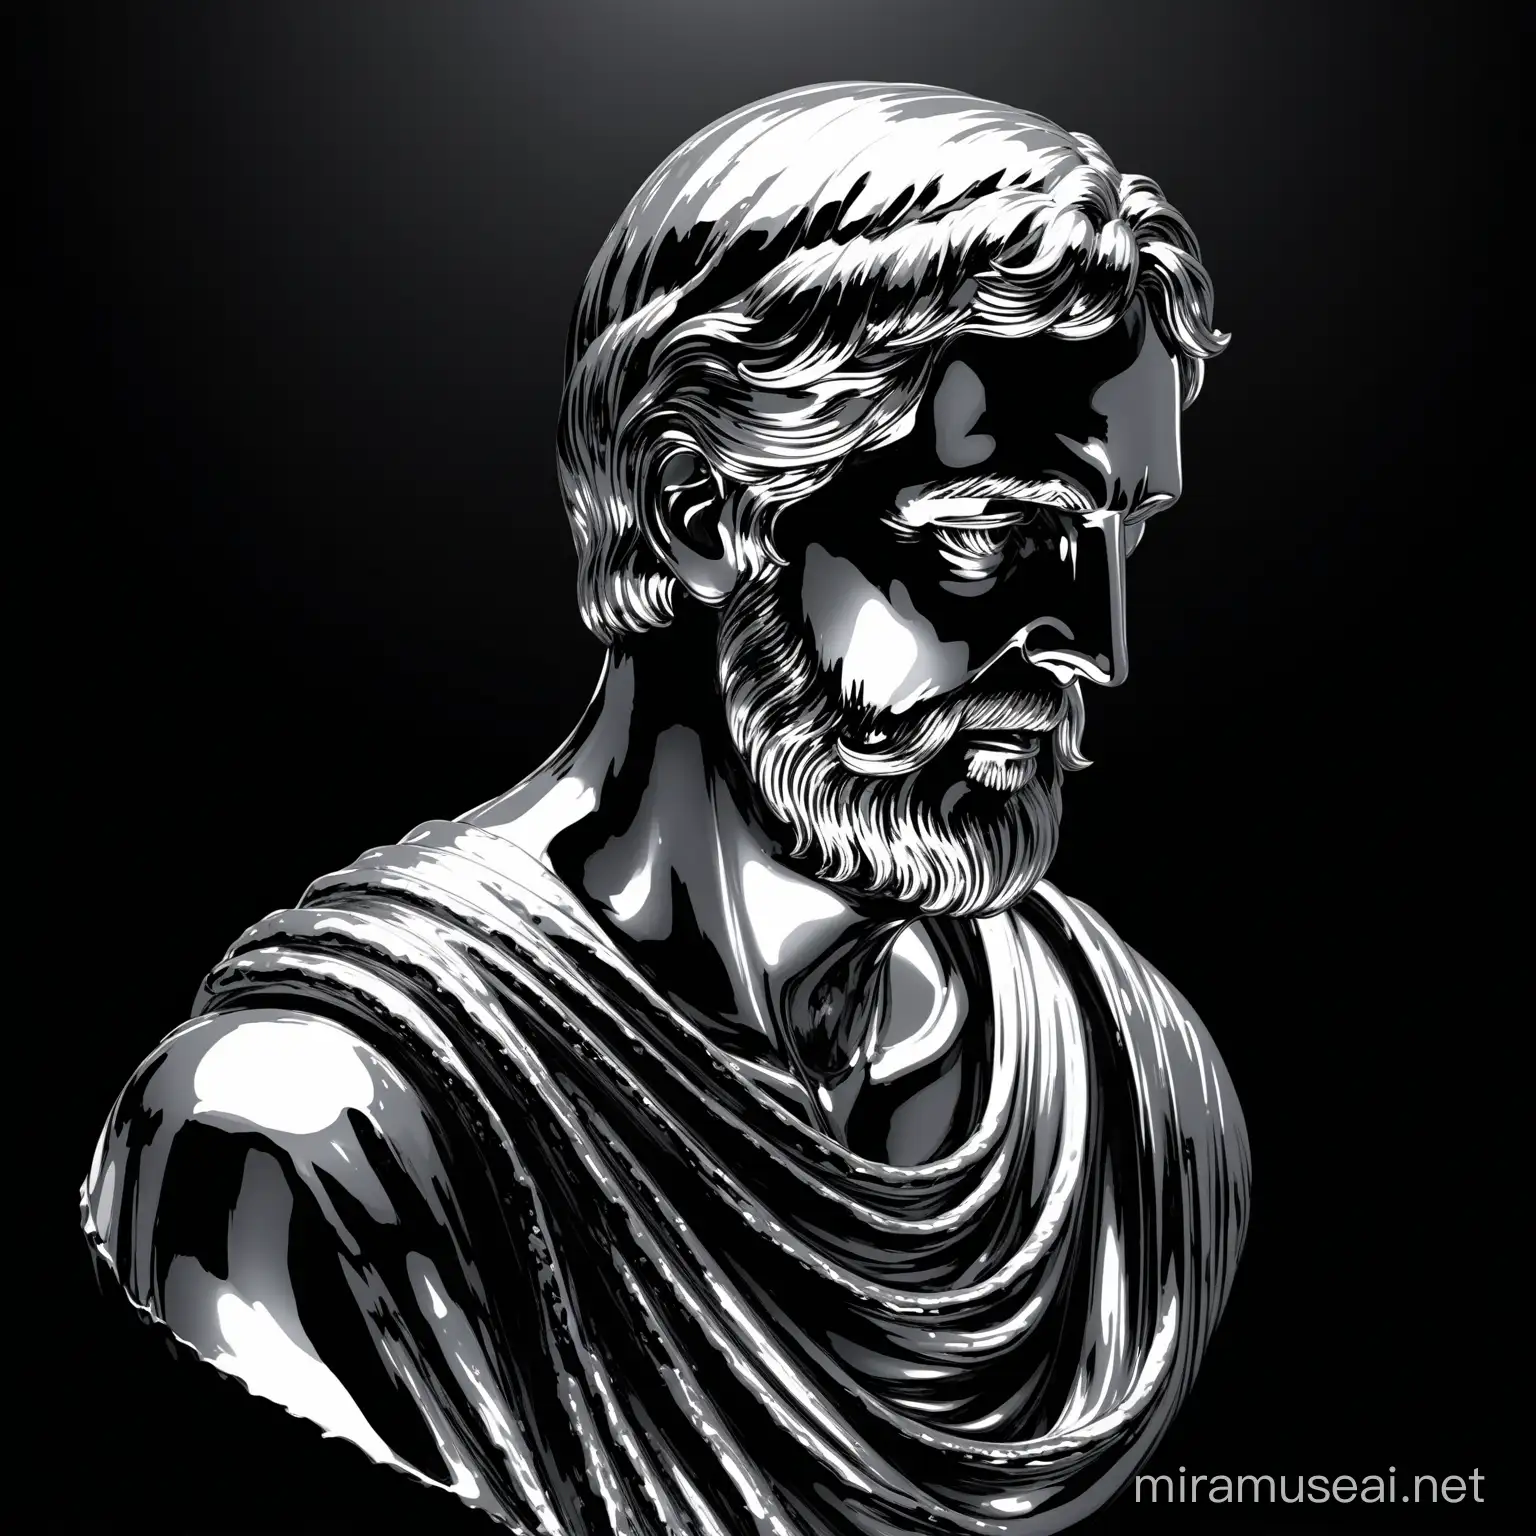 dans un fond noire, un statue en metal liquide argent d'un philosophe de la rome antique 